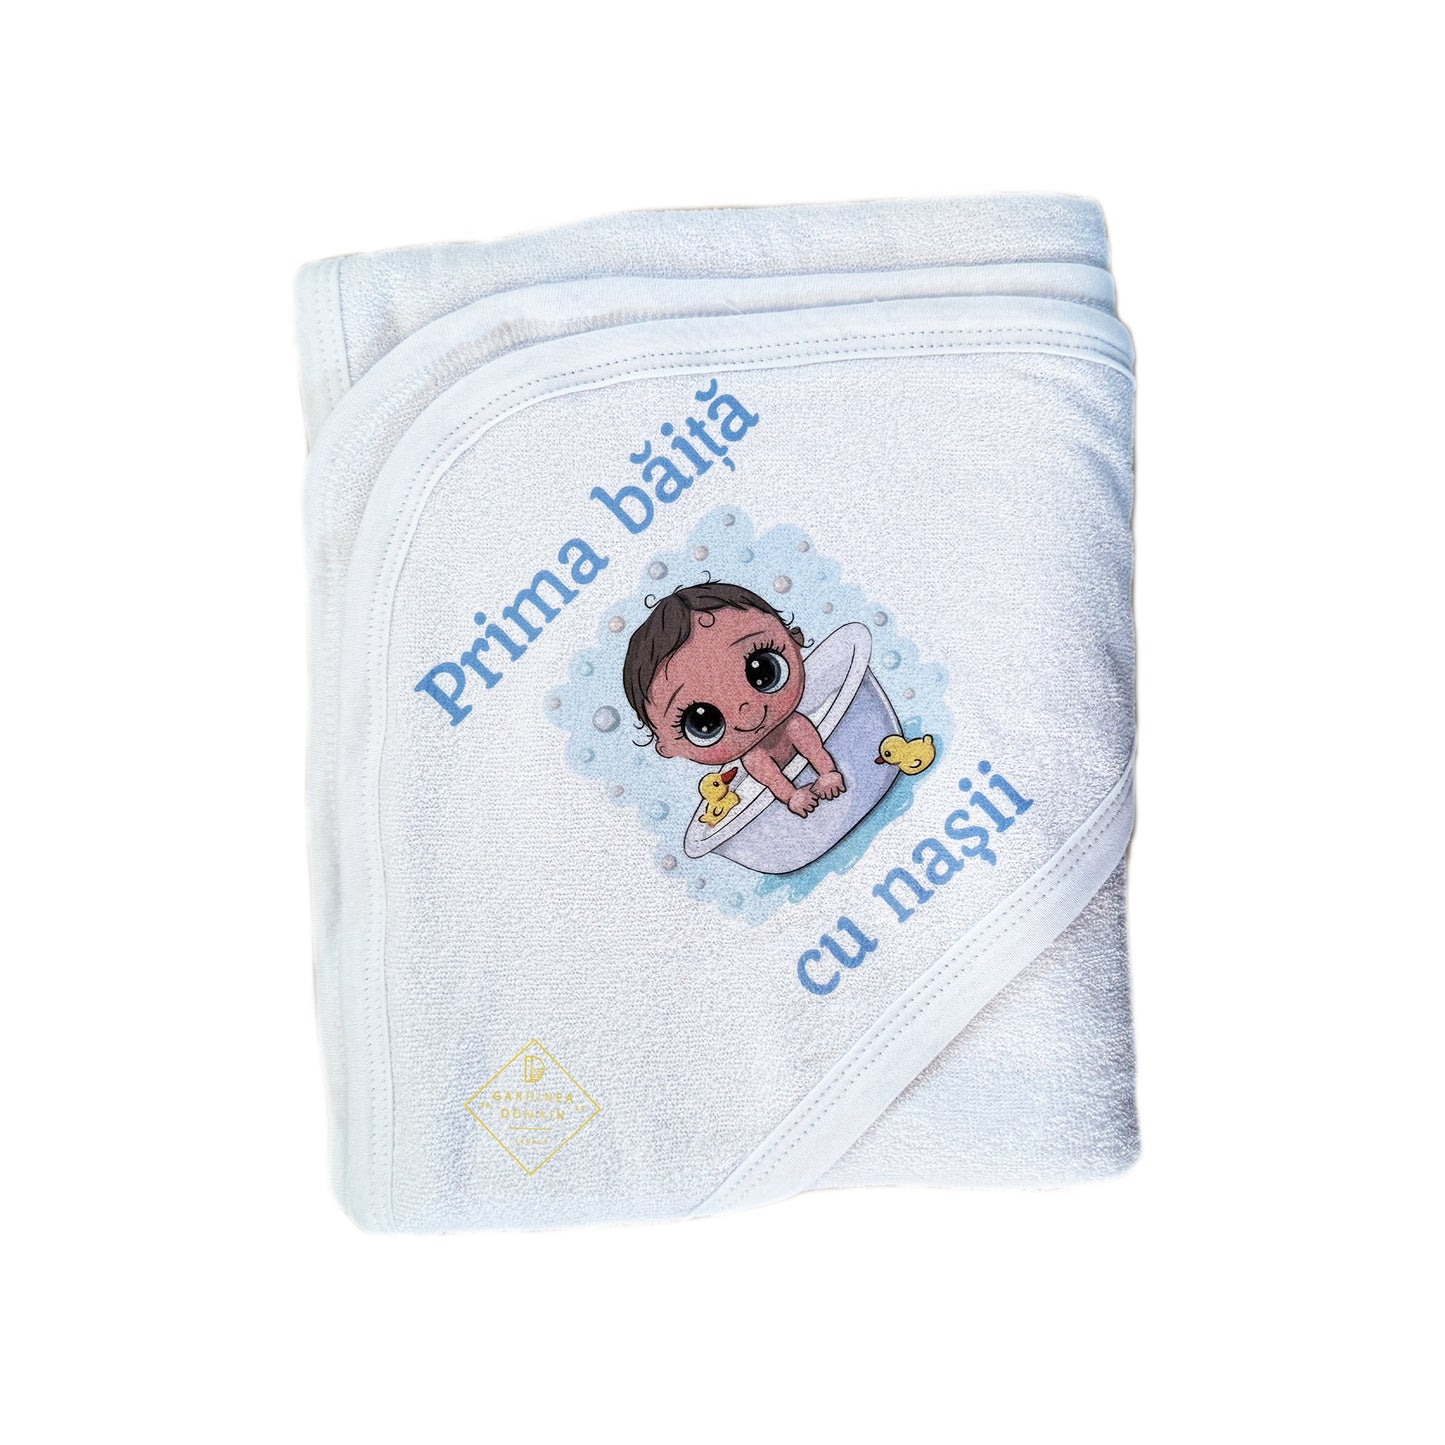 Set prima baita dupa botez baietel bebelus Gardinea Domain® 3 piese, in cutie cadou, bumbac 100% personalizat cu mesajul "Prima baita cu nasii", albastru